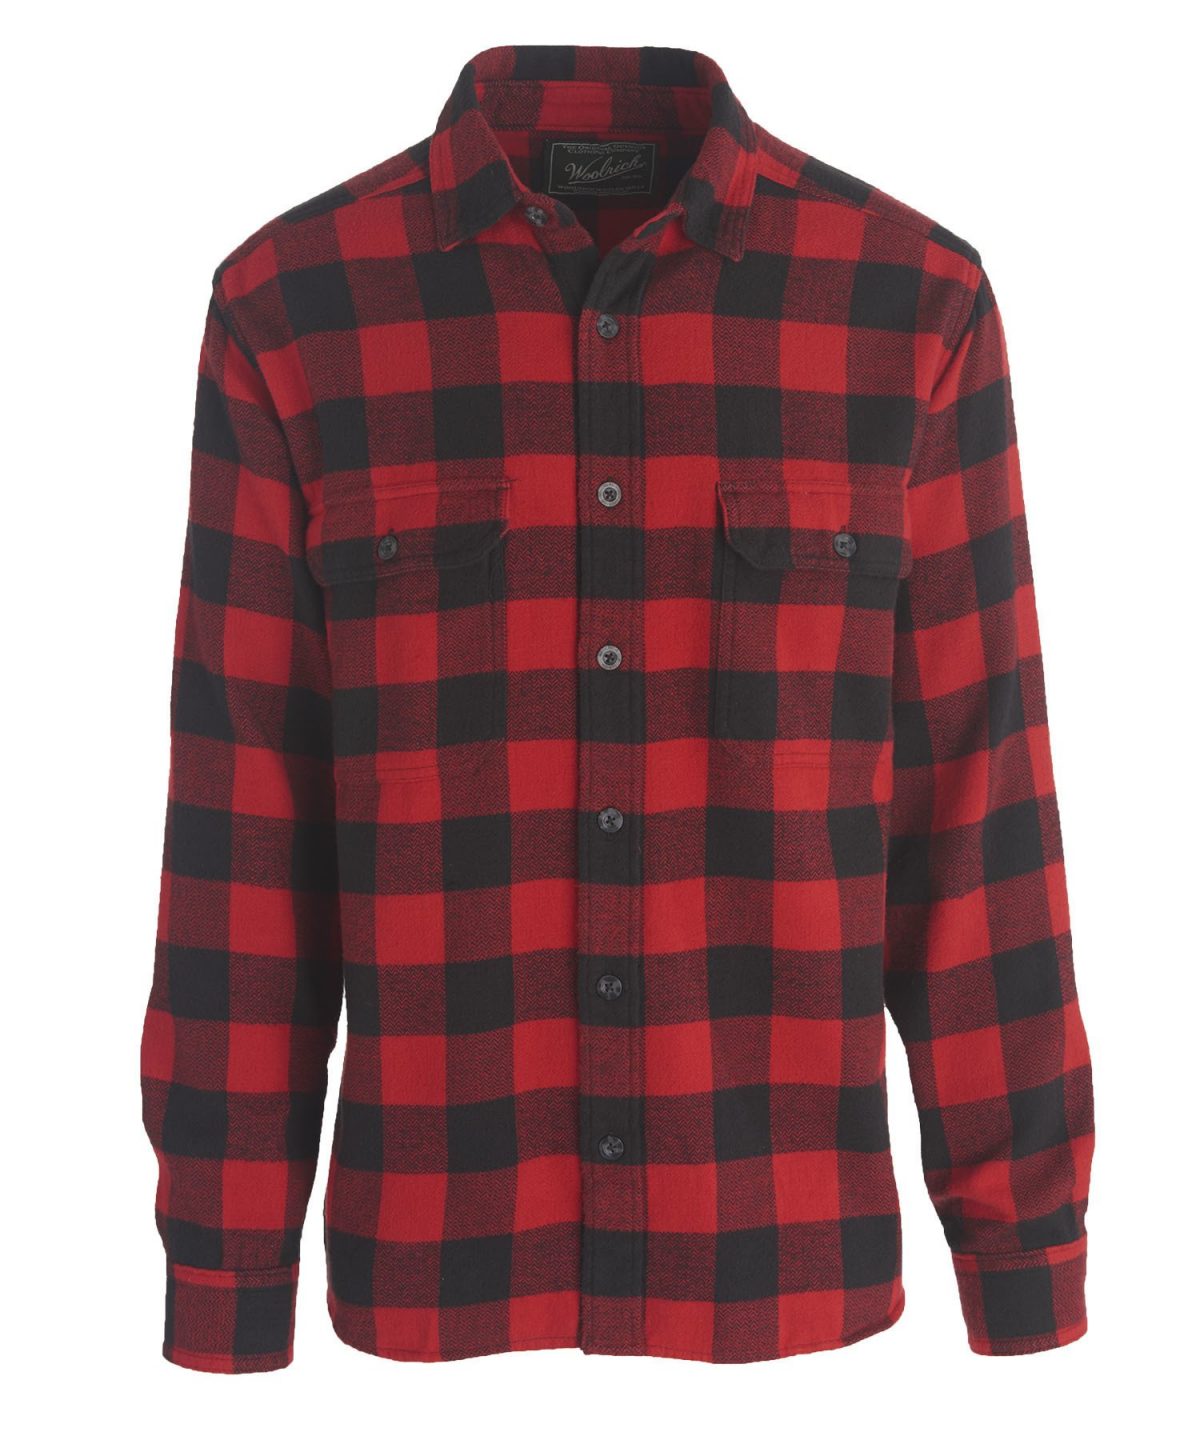 mens flannel shirts – 6 – careyfashion.com